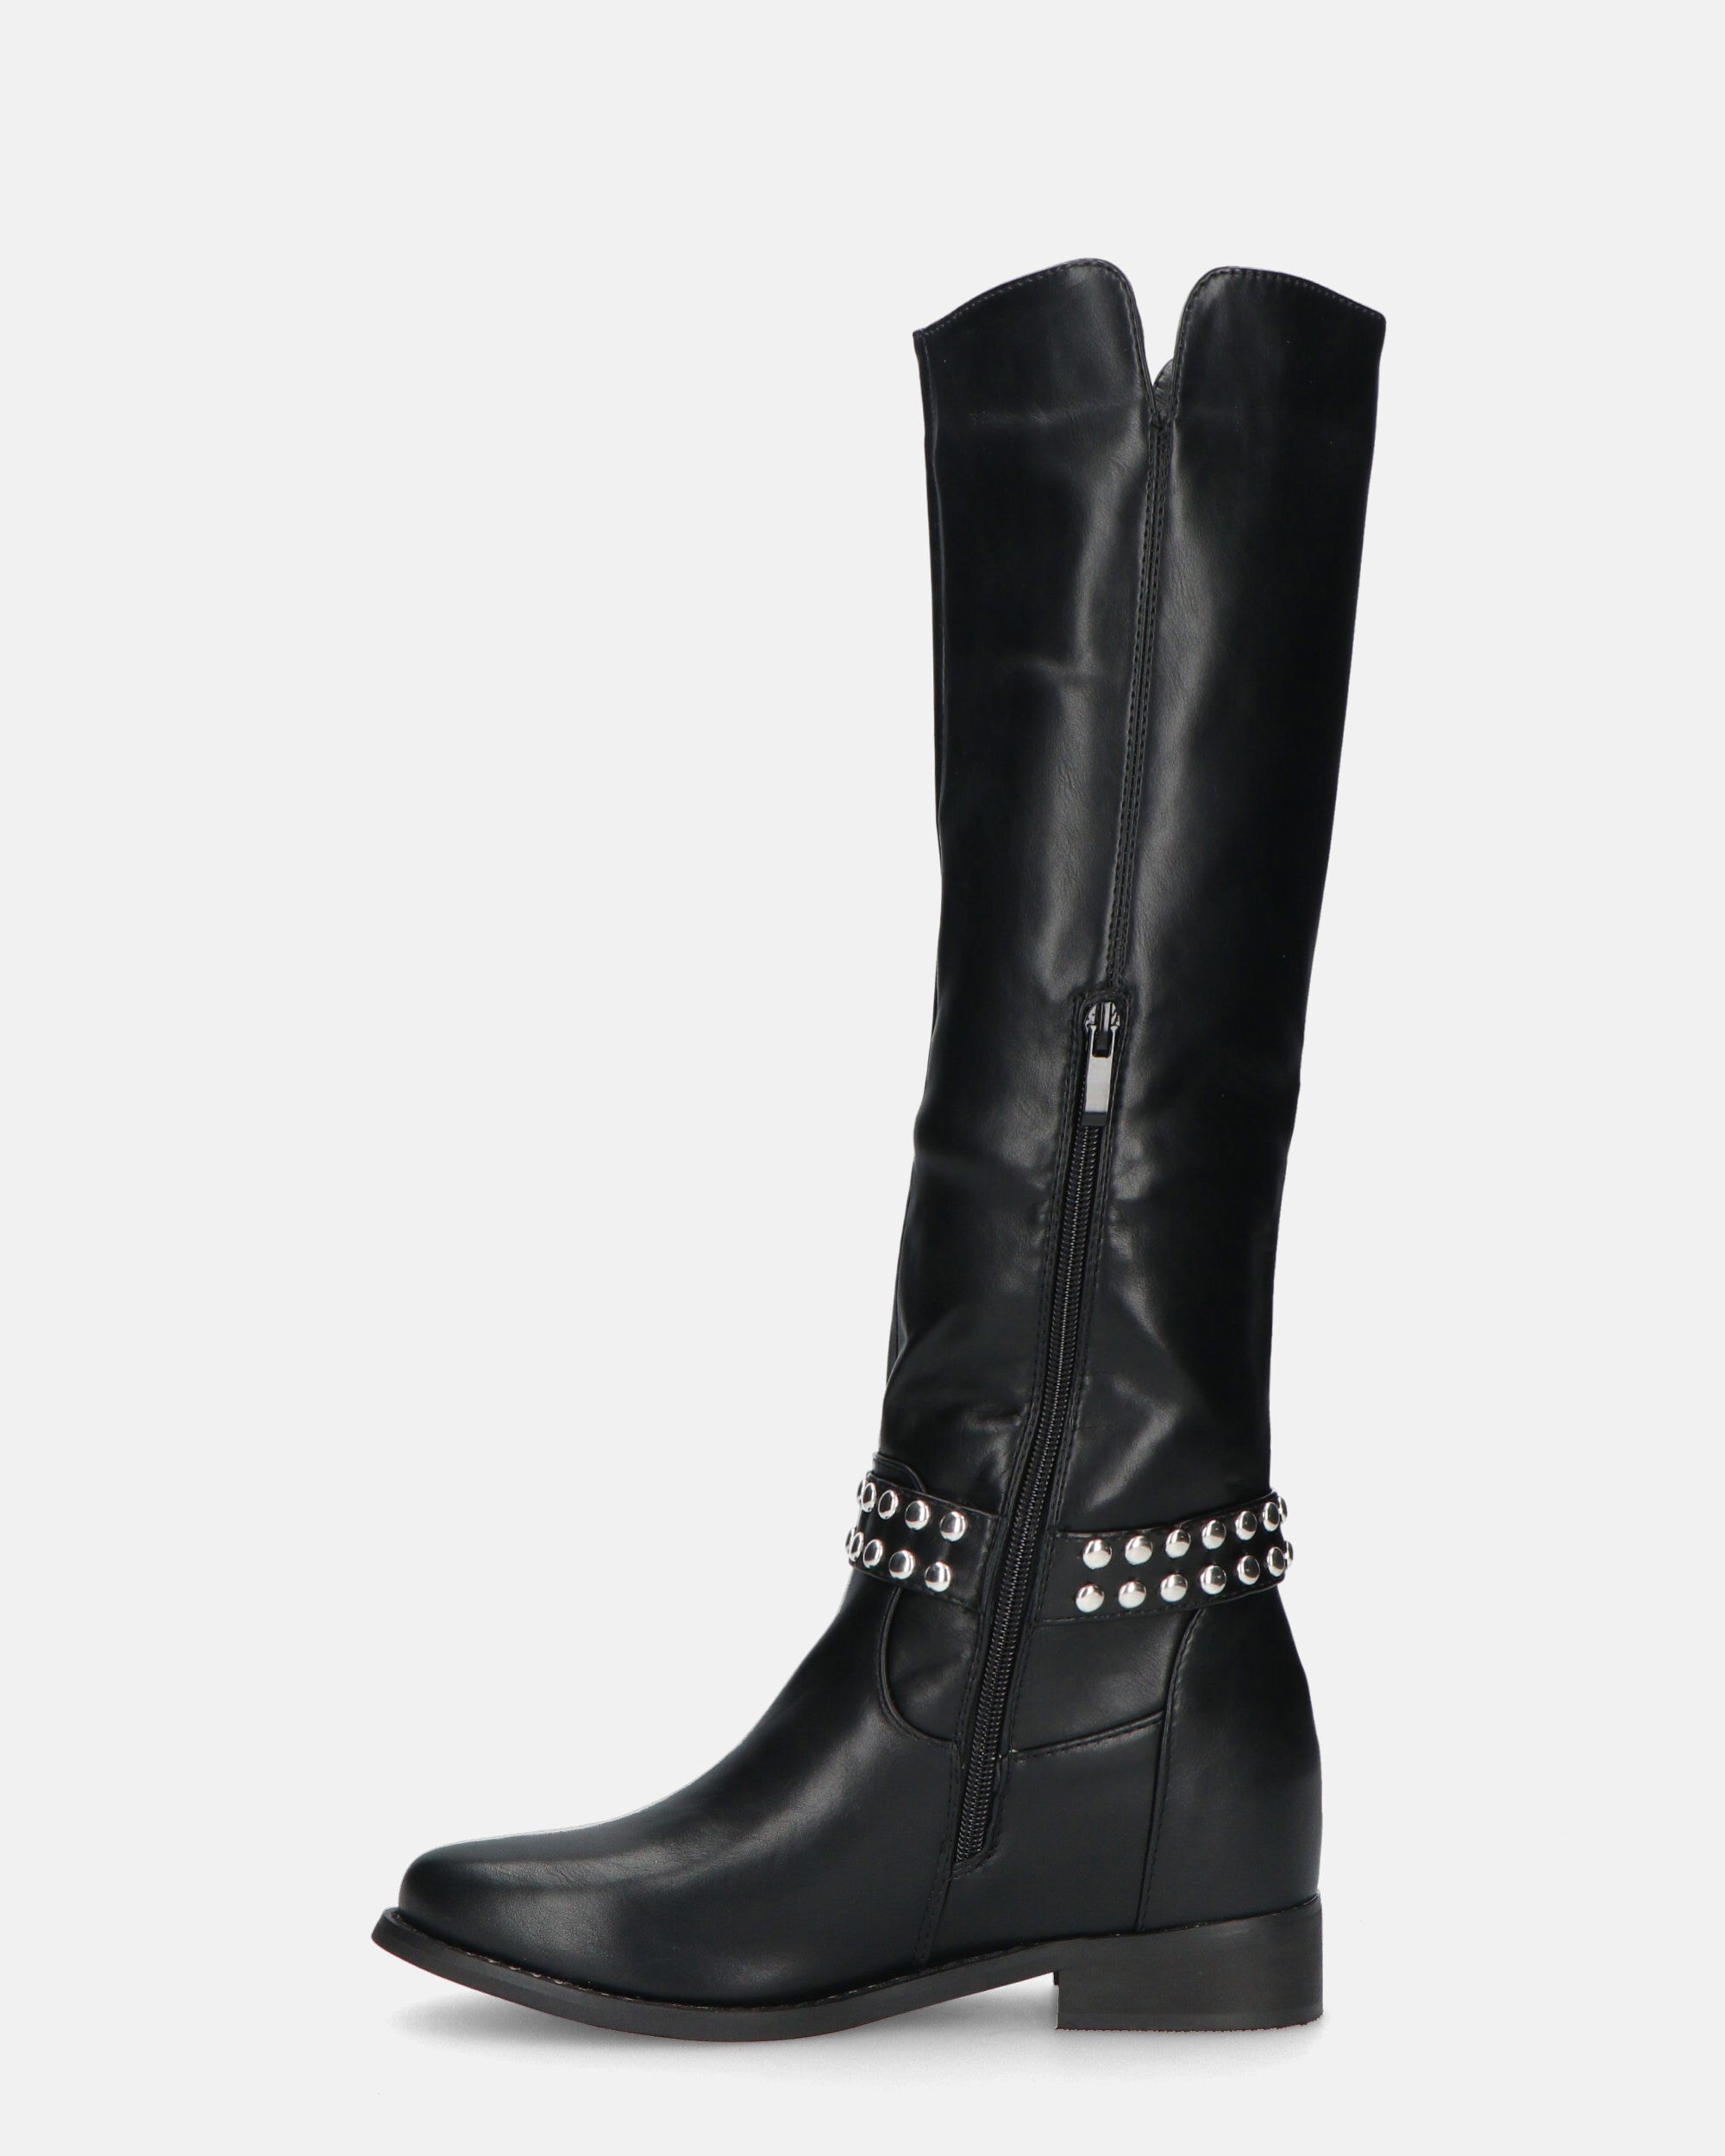 KITA - bottes hautes noires avec bride cloutée et zip latéral